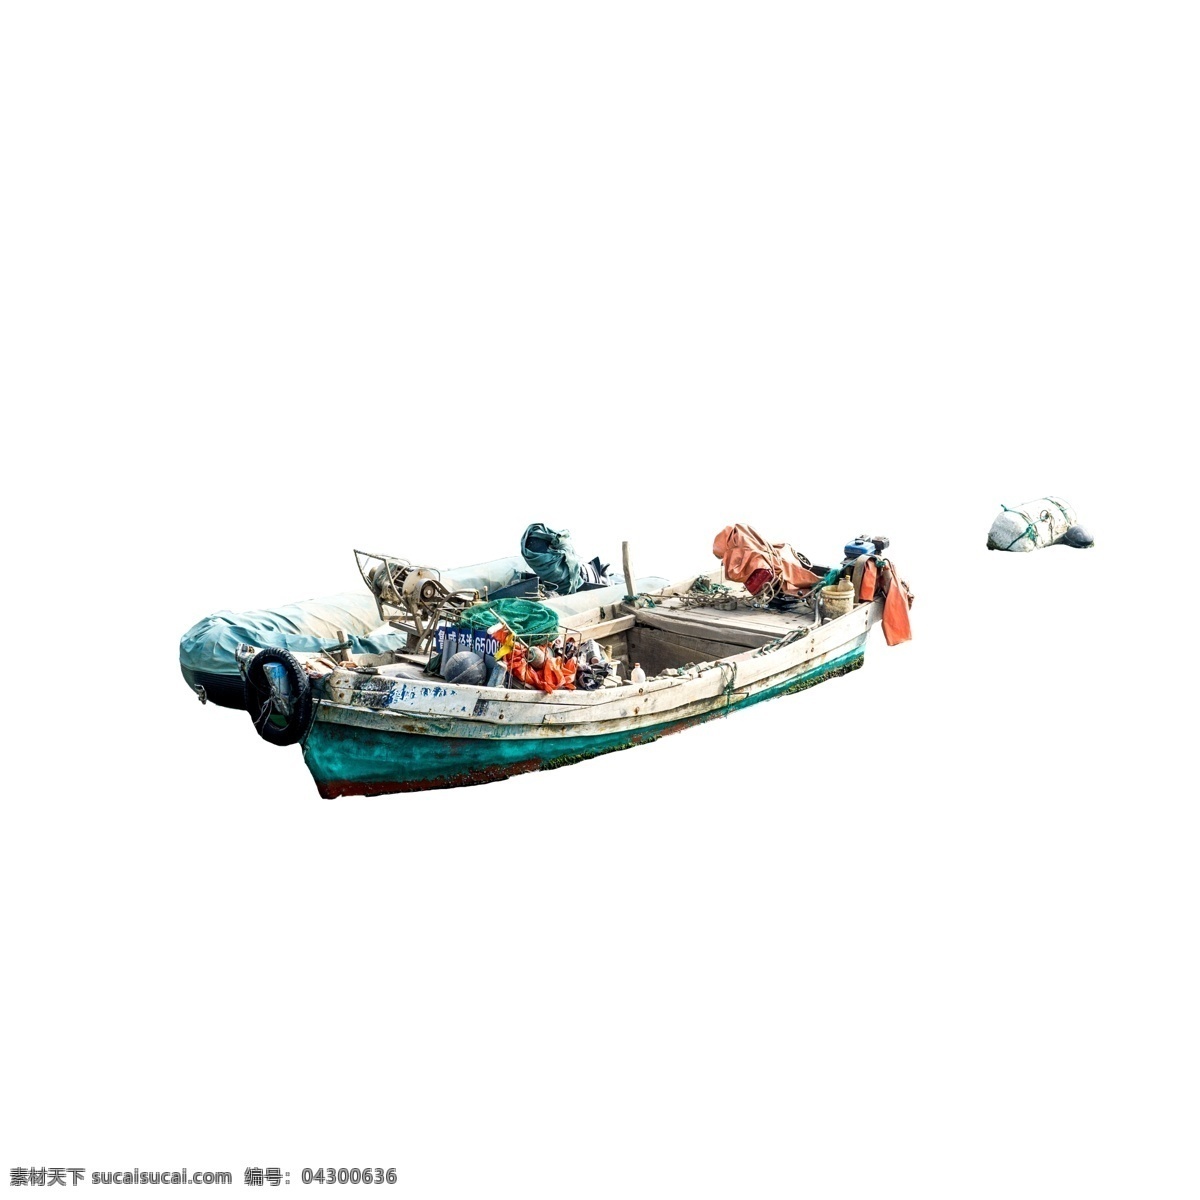 彩色 立体 真实 划船 元素 纹理 捕捞 打鱼 美味 渔民 救援 质感 机械 光泽 水面 漂浮 发动机